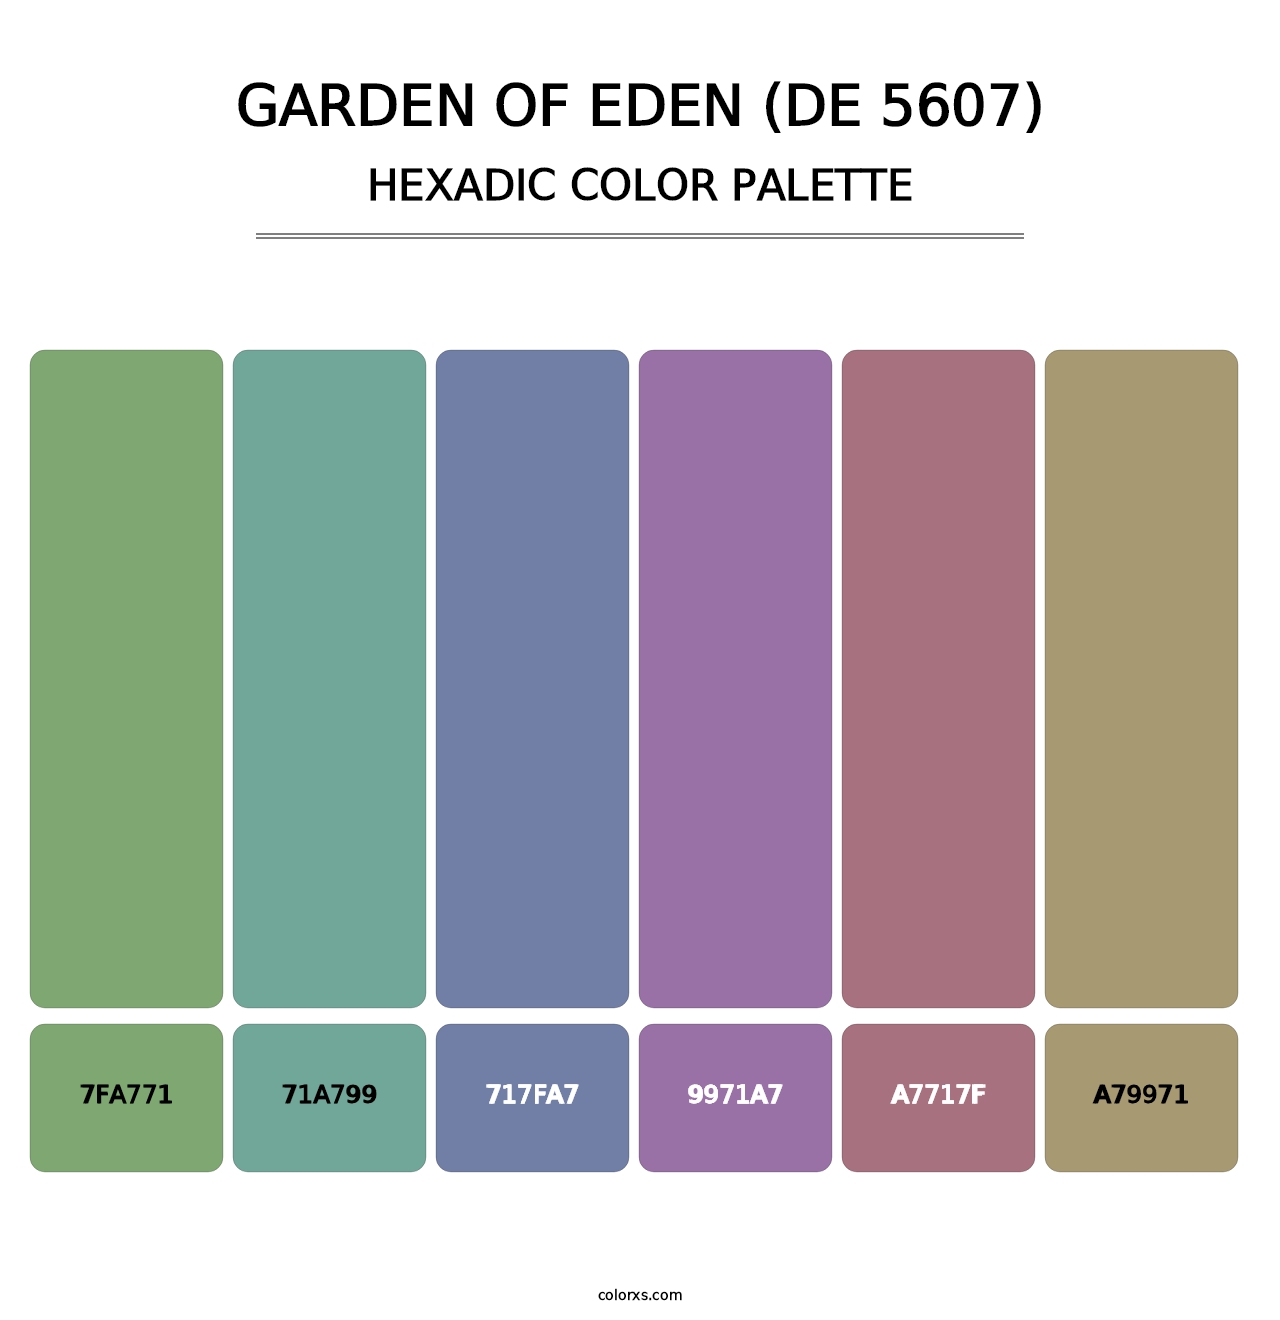 Garden of Eden (DE 5607) - Hexadic Color Palette